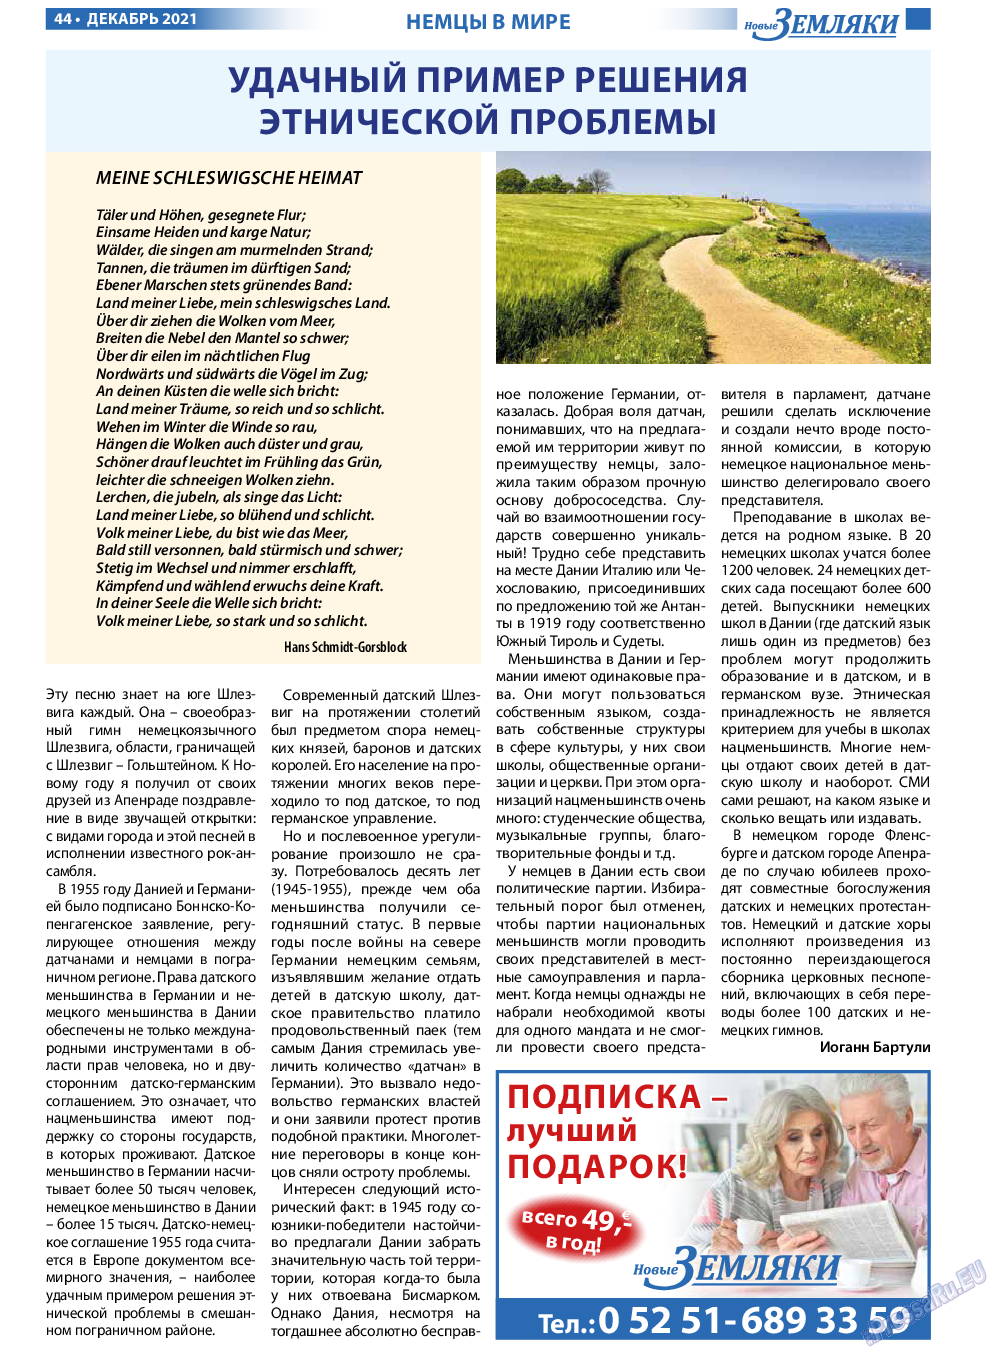 Новые Земляки, газета. 2021 №12 стр.44